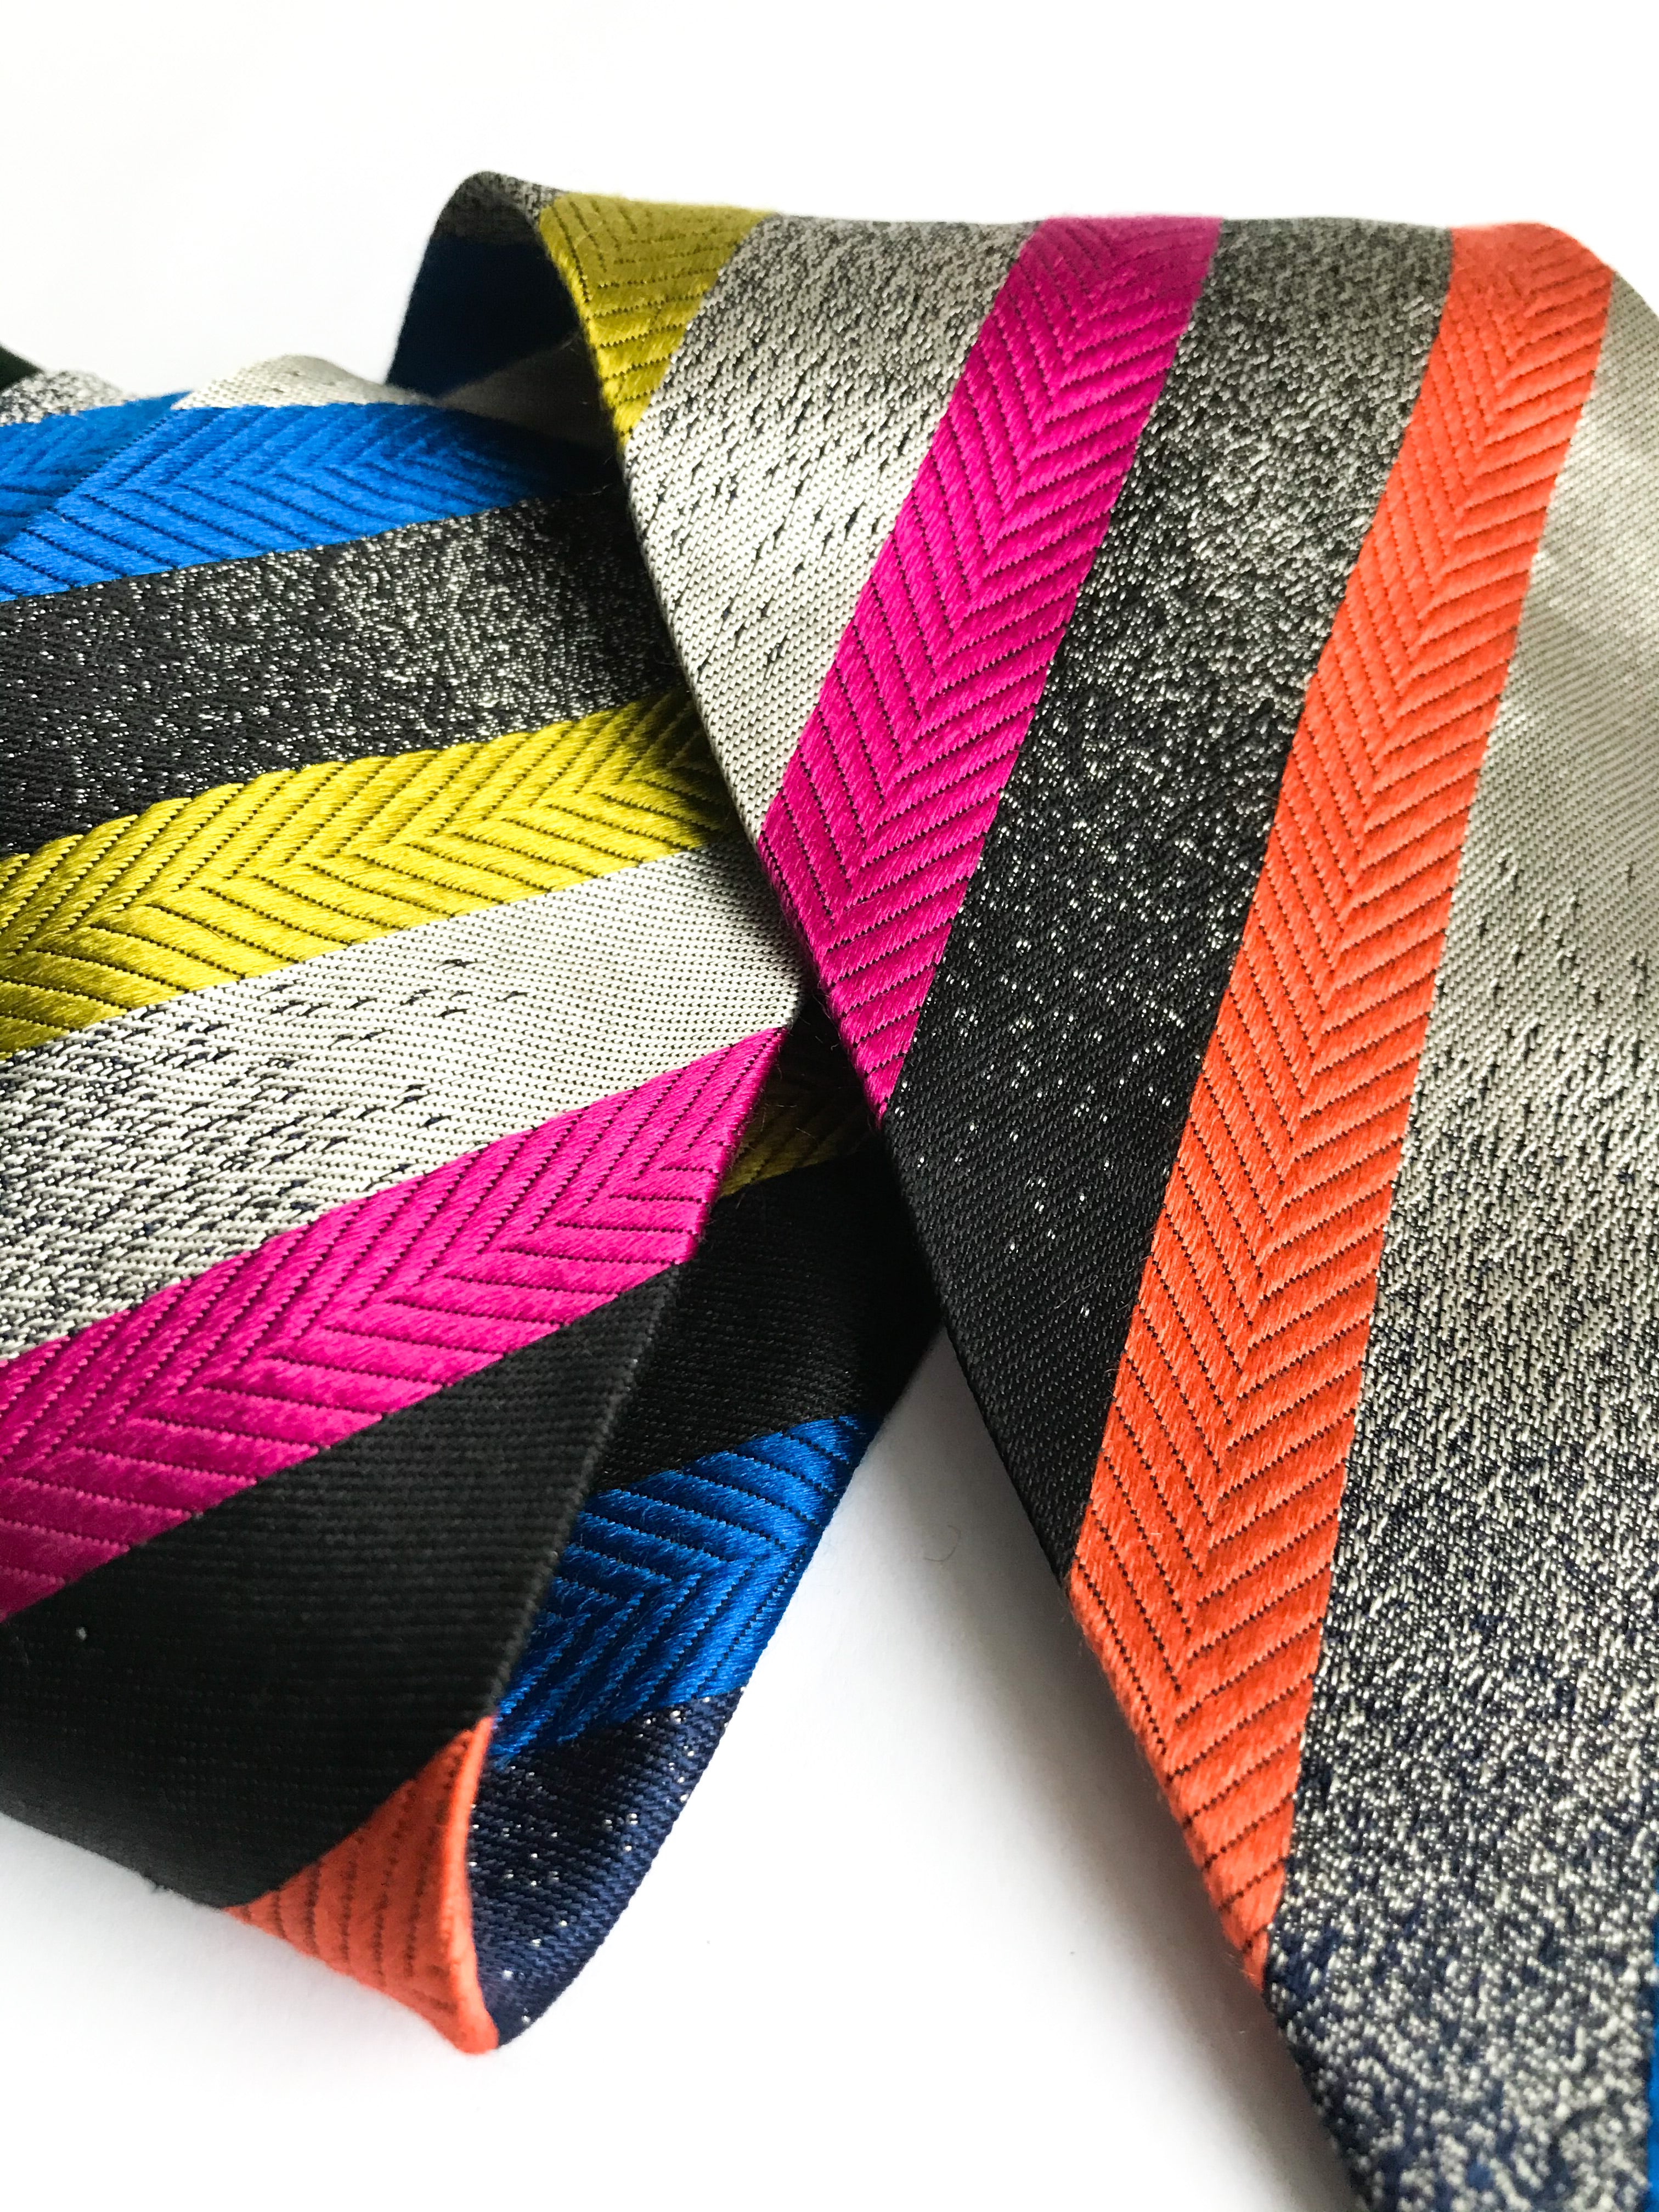 Missoni Cravatte Striped Colorful Silk Tie